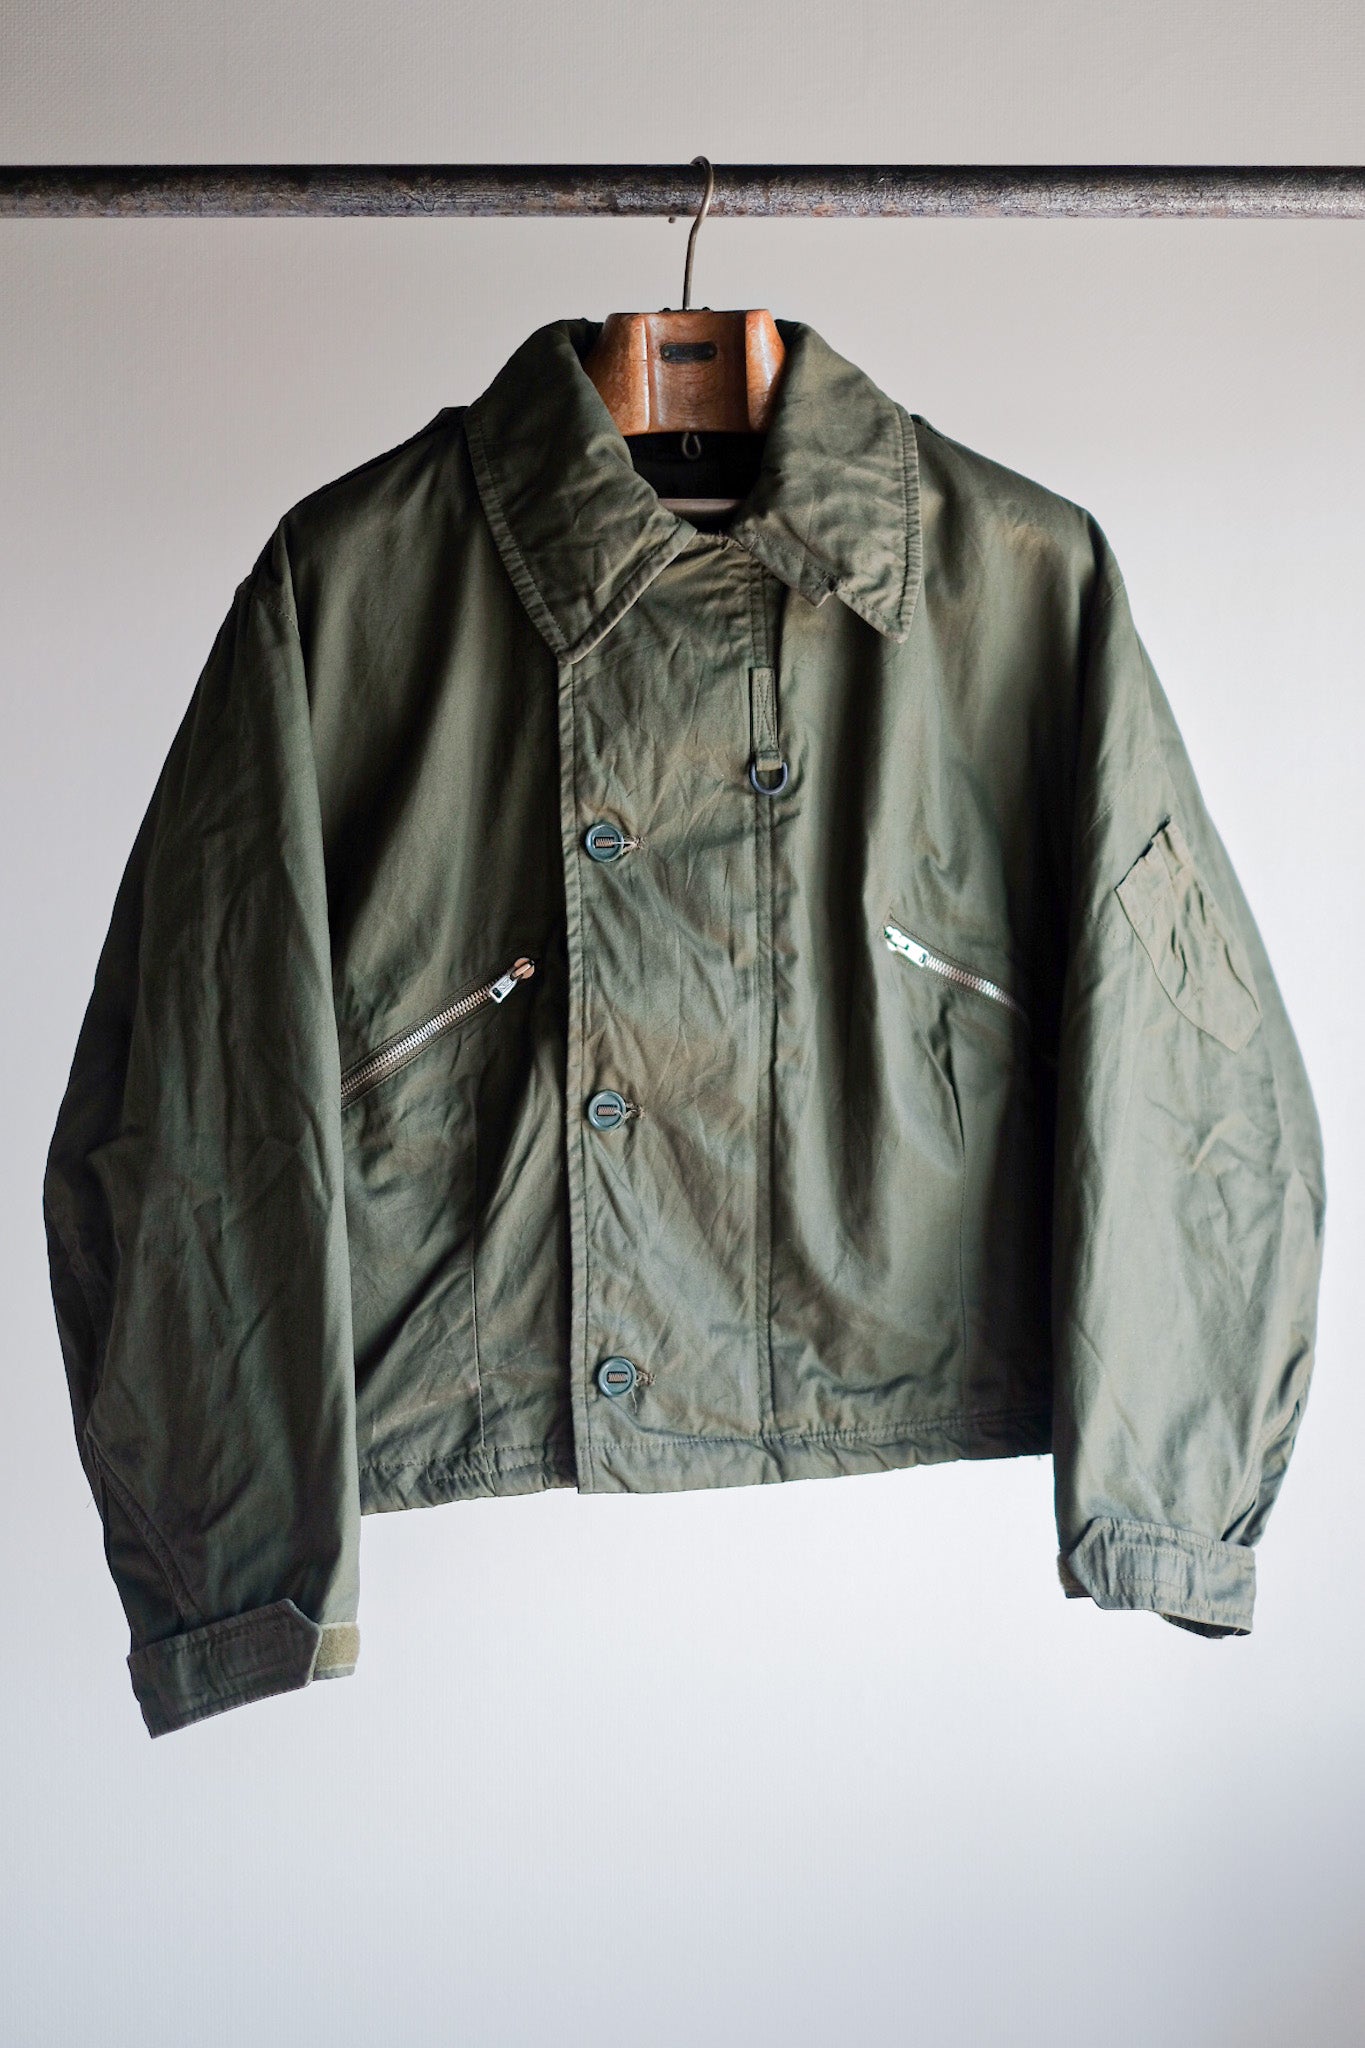 [〜80年代]皇家空軍MK3寒冷的天氣飛行夾克尺寸4